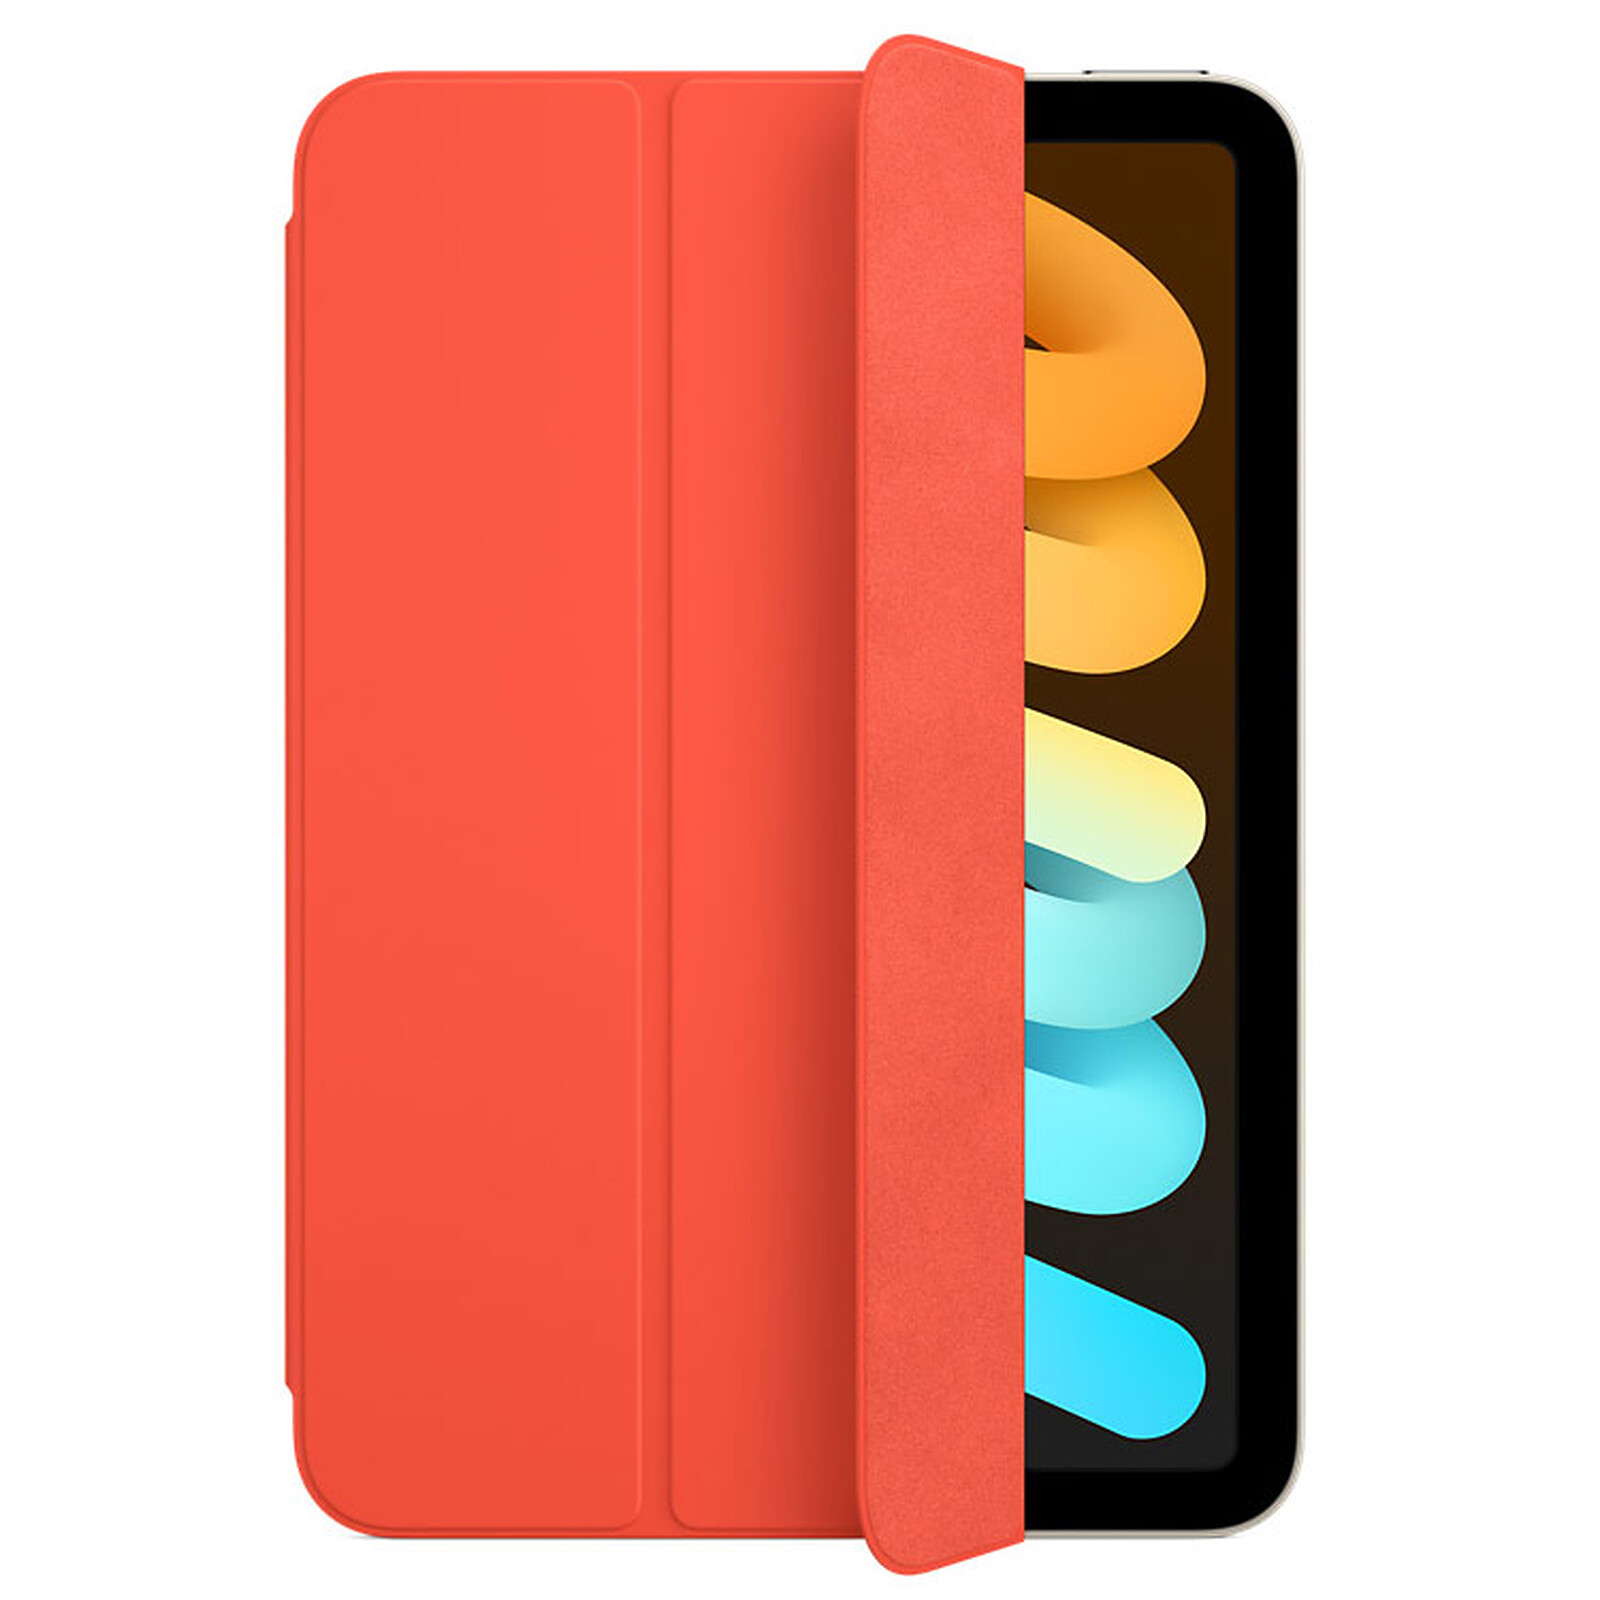 Acheter Coque iPad Mini 6 - Smart Folio - Noir